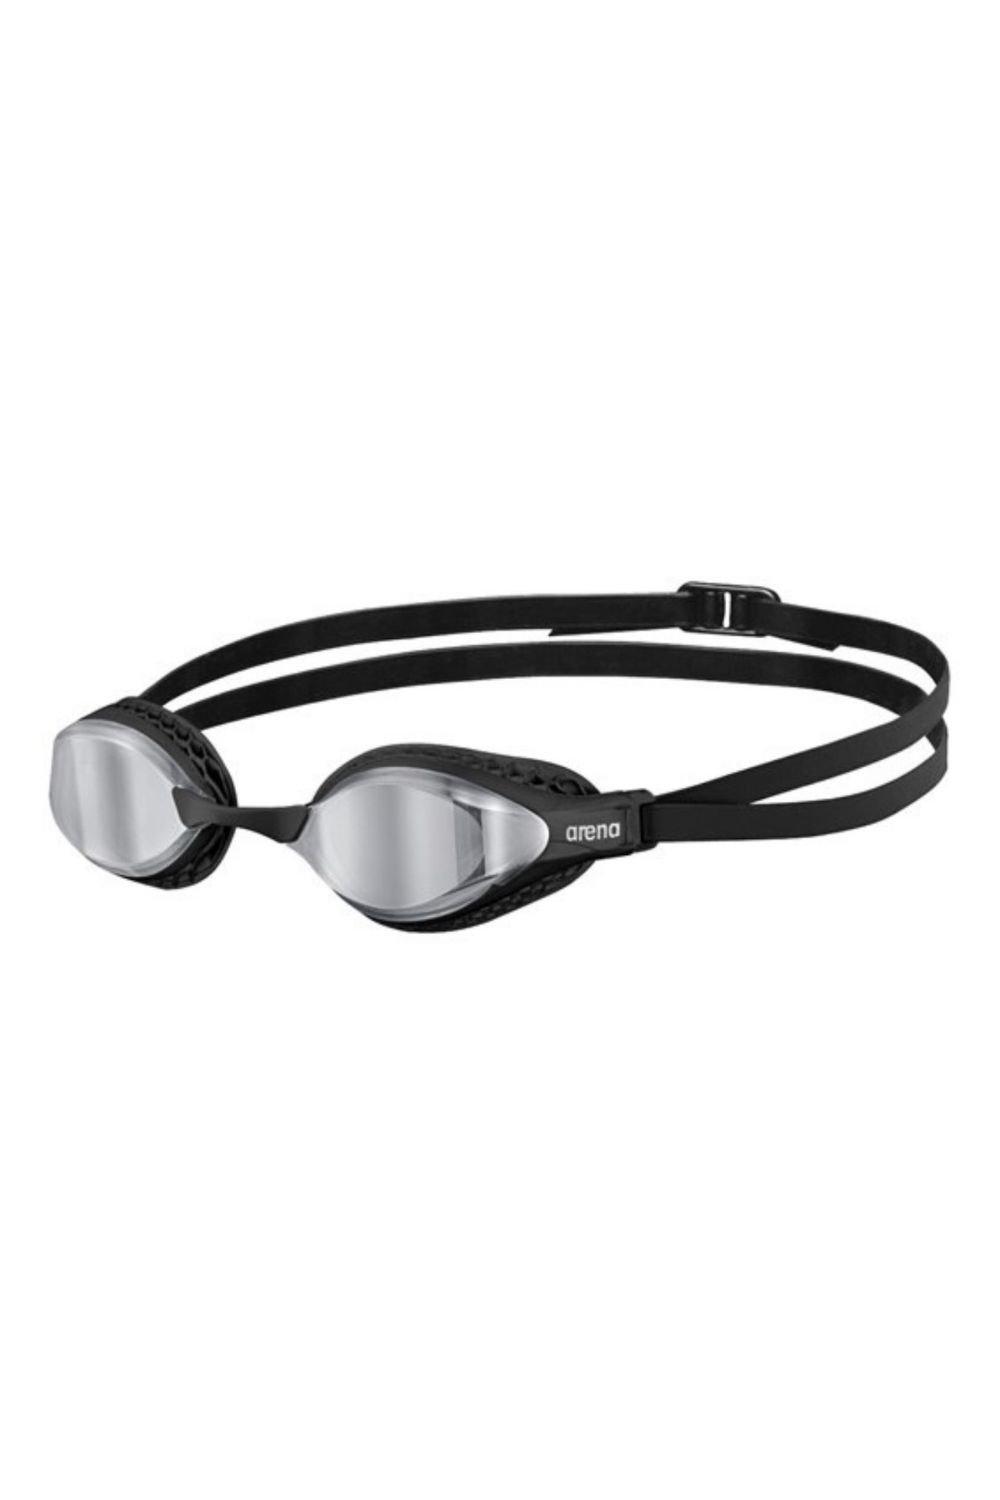 Очки для плавания с зеркалом Airspeed Arena, черный очки для плавания водонепроницаемые противотуманные hd очки для плавания с градусом очки для дайвинга для женщин